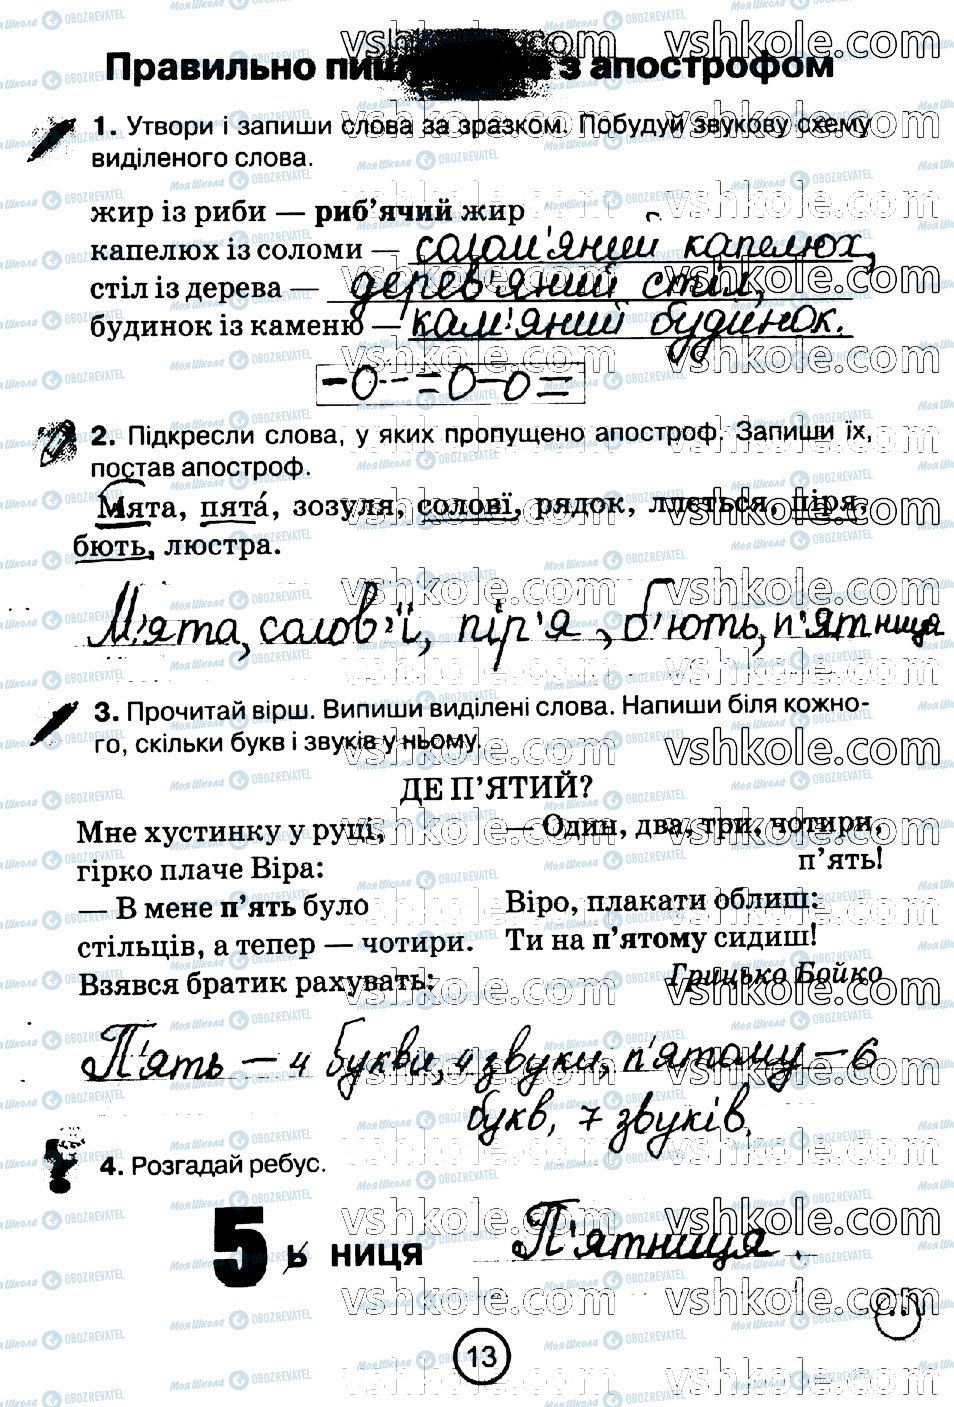 ГДЗ Укр мова 2 класс страница стр13